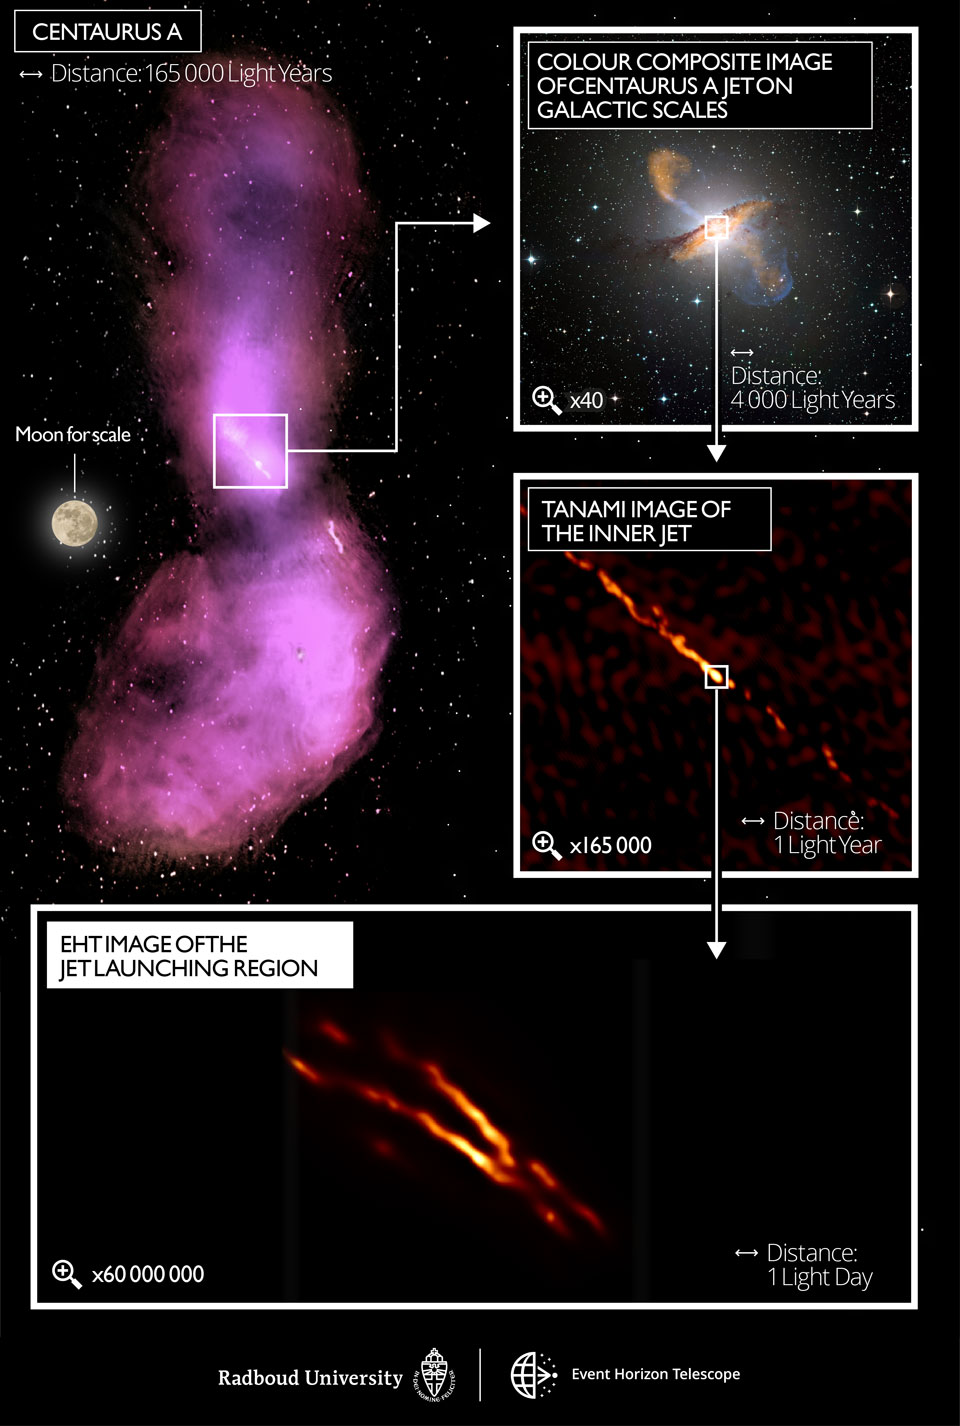 Das Event Horizon Telescope (EHT) zeigt einen Bildausschnitt eines Schwarzen Lochs in Centaurus A, der am Himmel die Winkelgröße eines Golfballs auf dem Mond einnimmt.